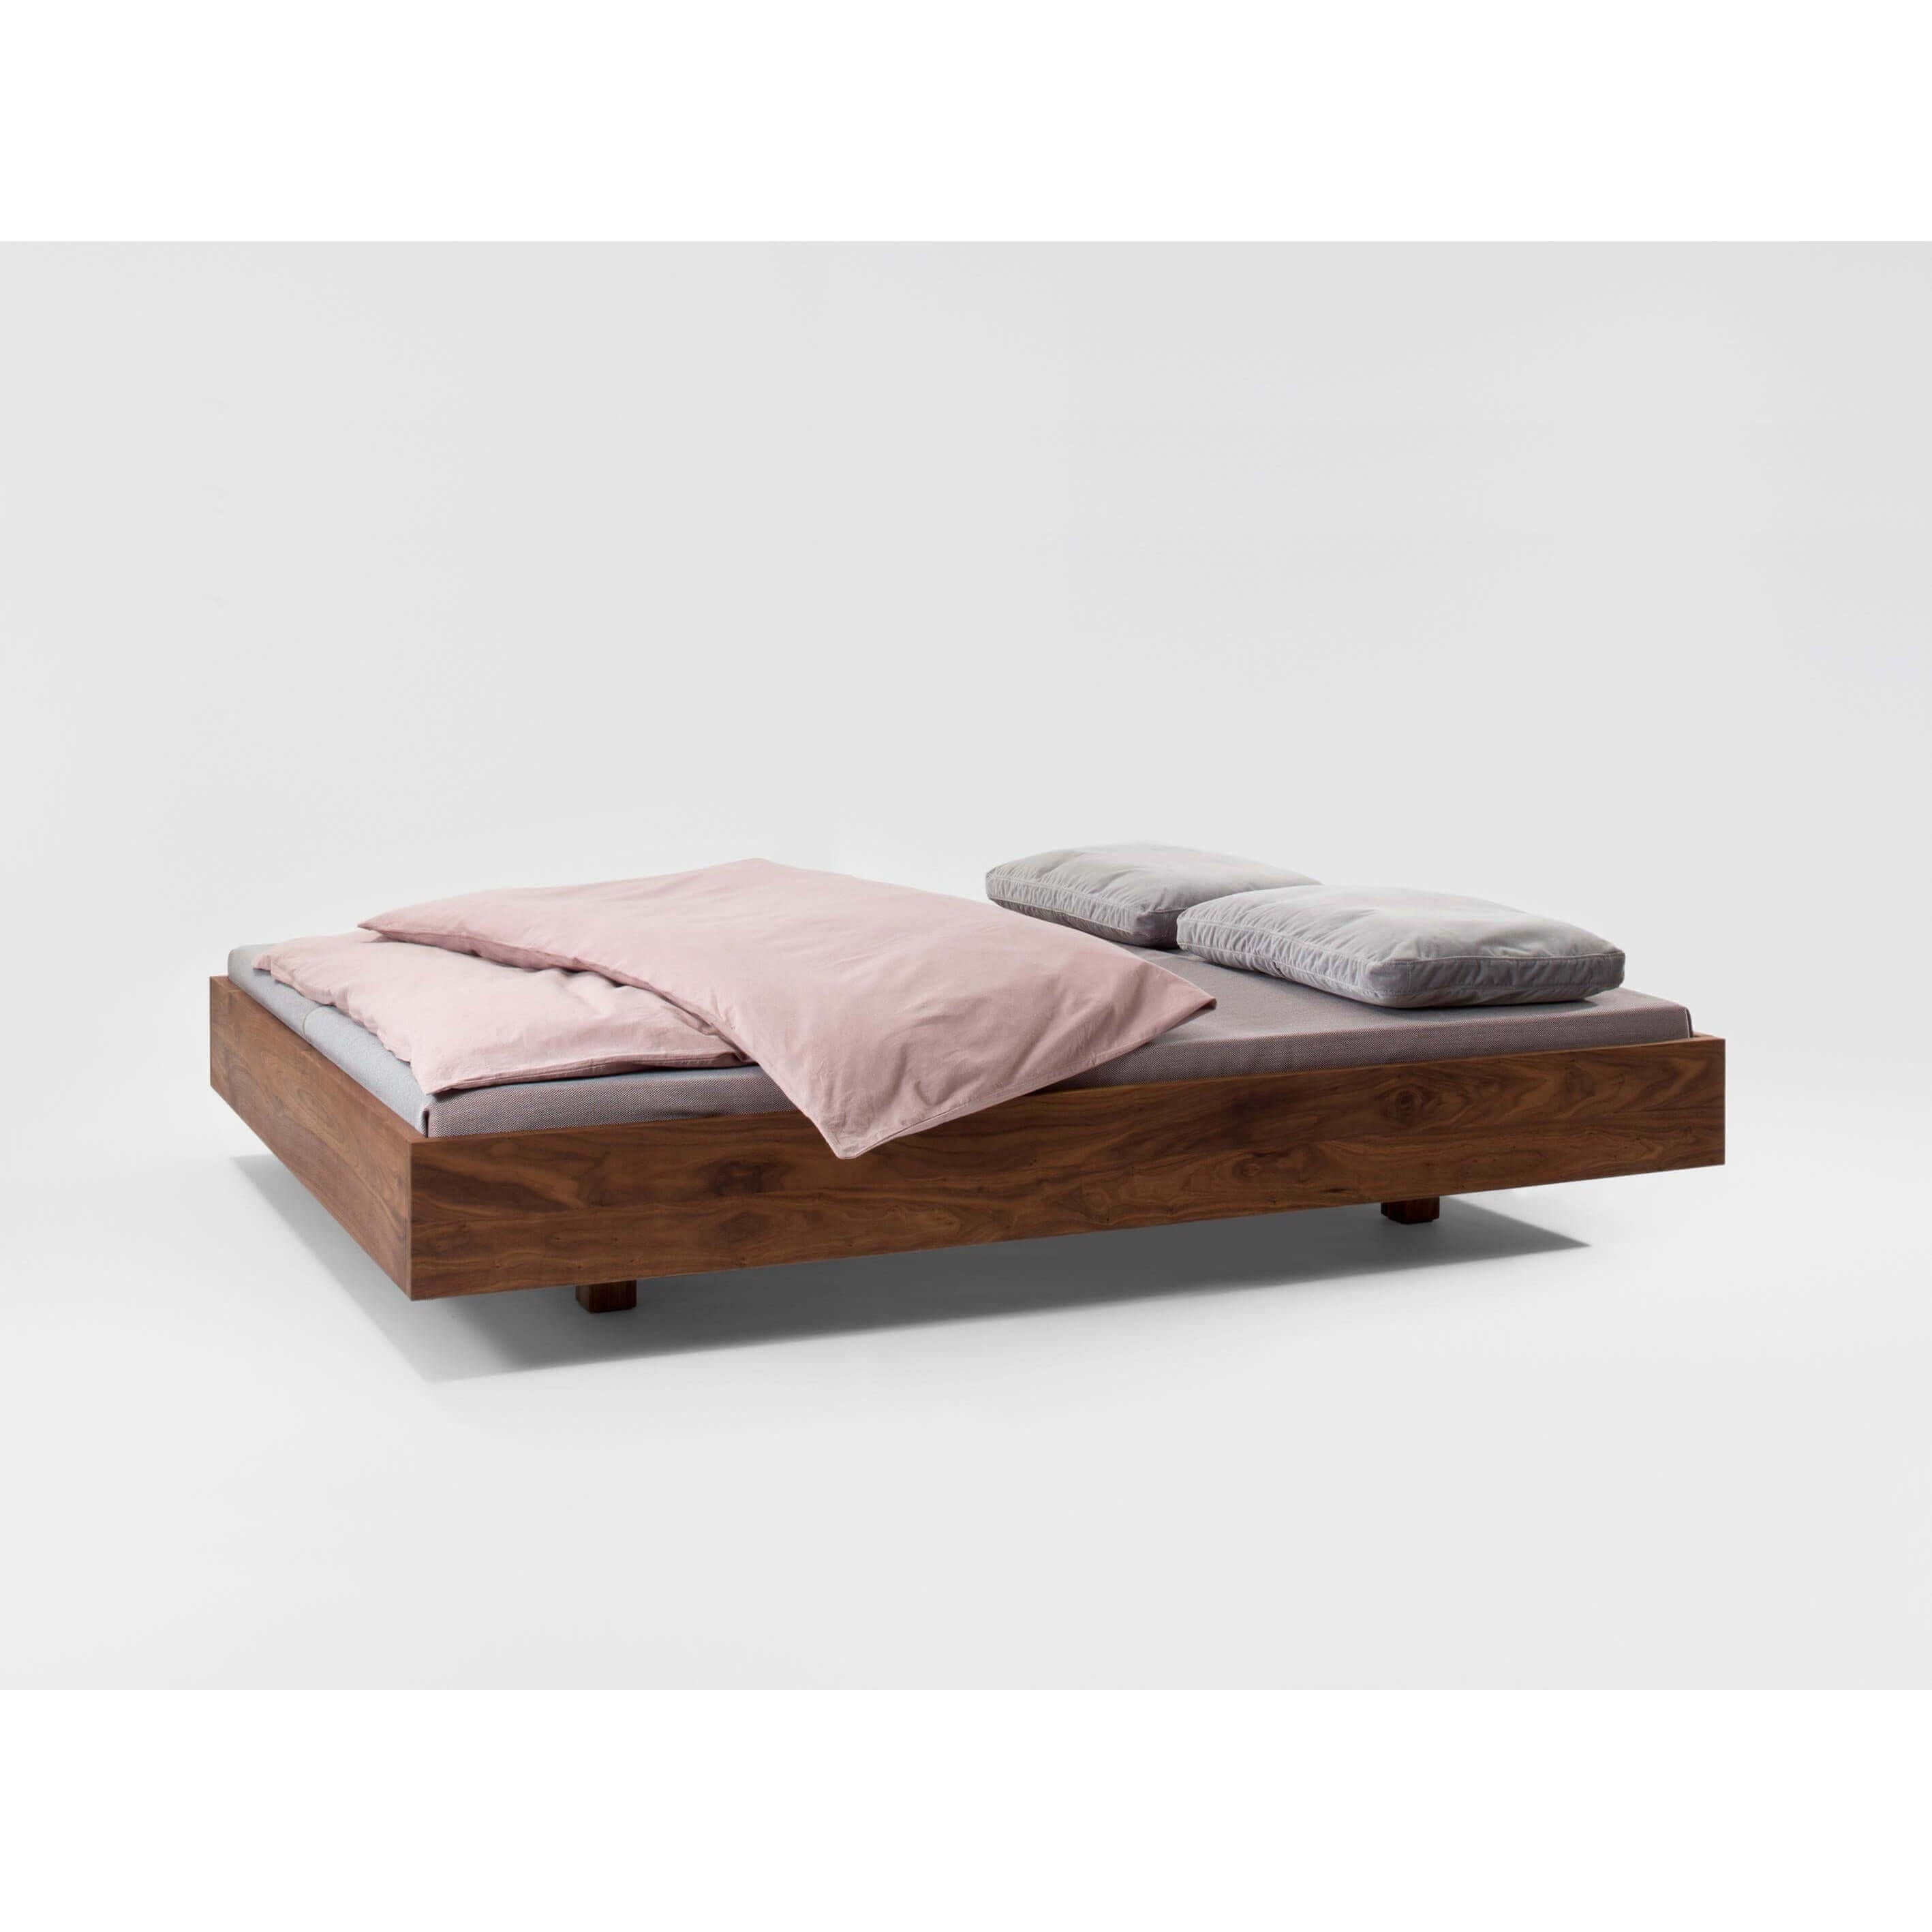 Teak Wood Floating Bed Frame - TimberCraft